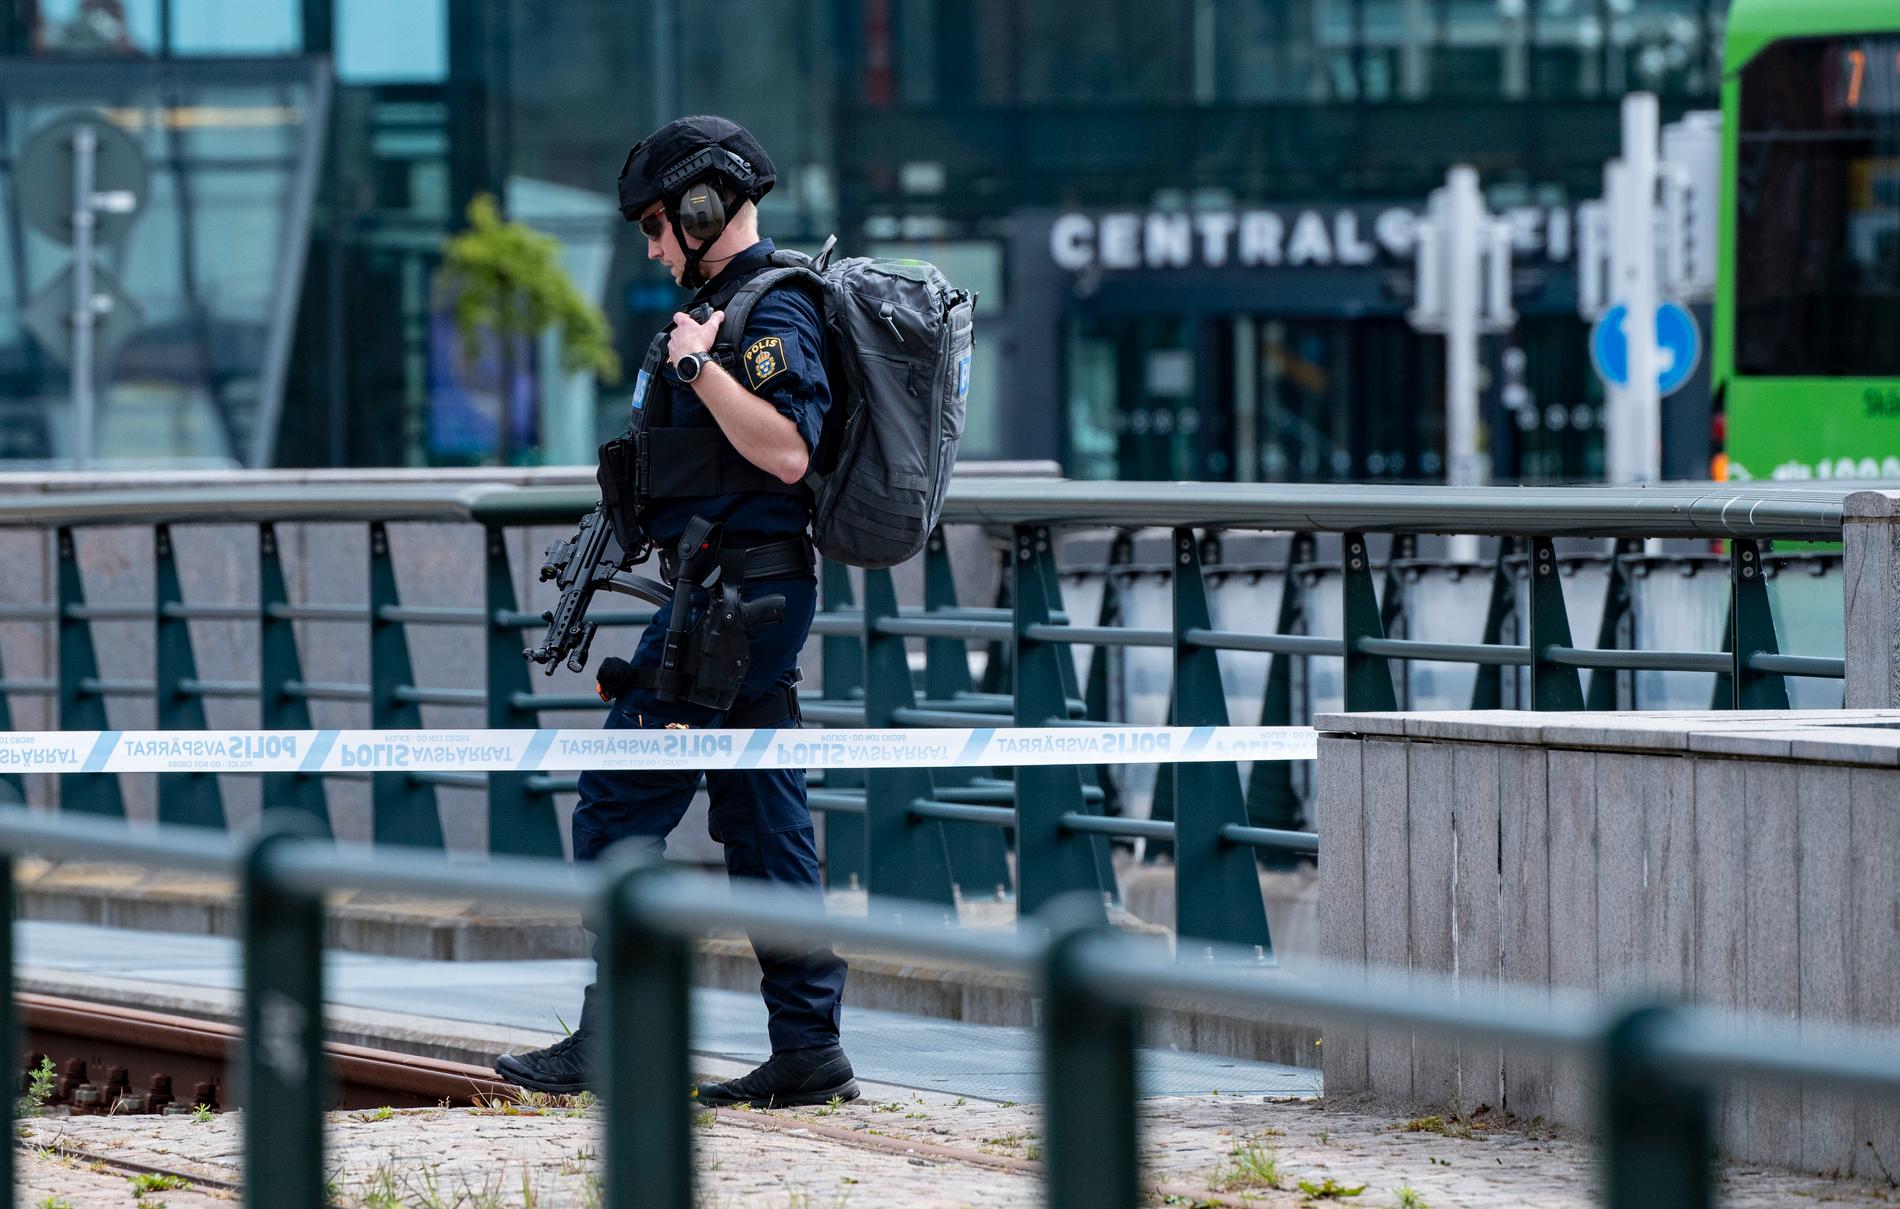 Tidigare i somras: Polis med förstärkningsvapen patrullerar utanför Malmö C i samband med larm om ett misstänkt föremål. Arkivbild.